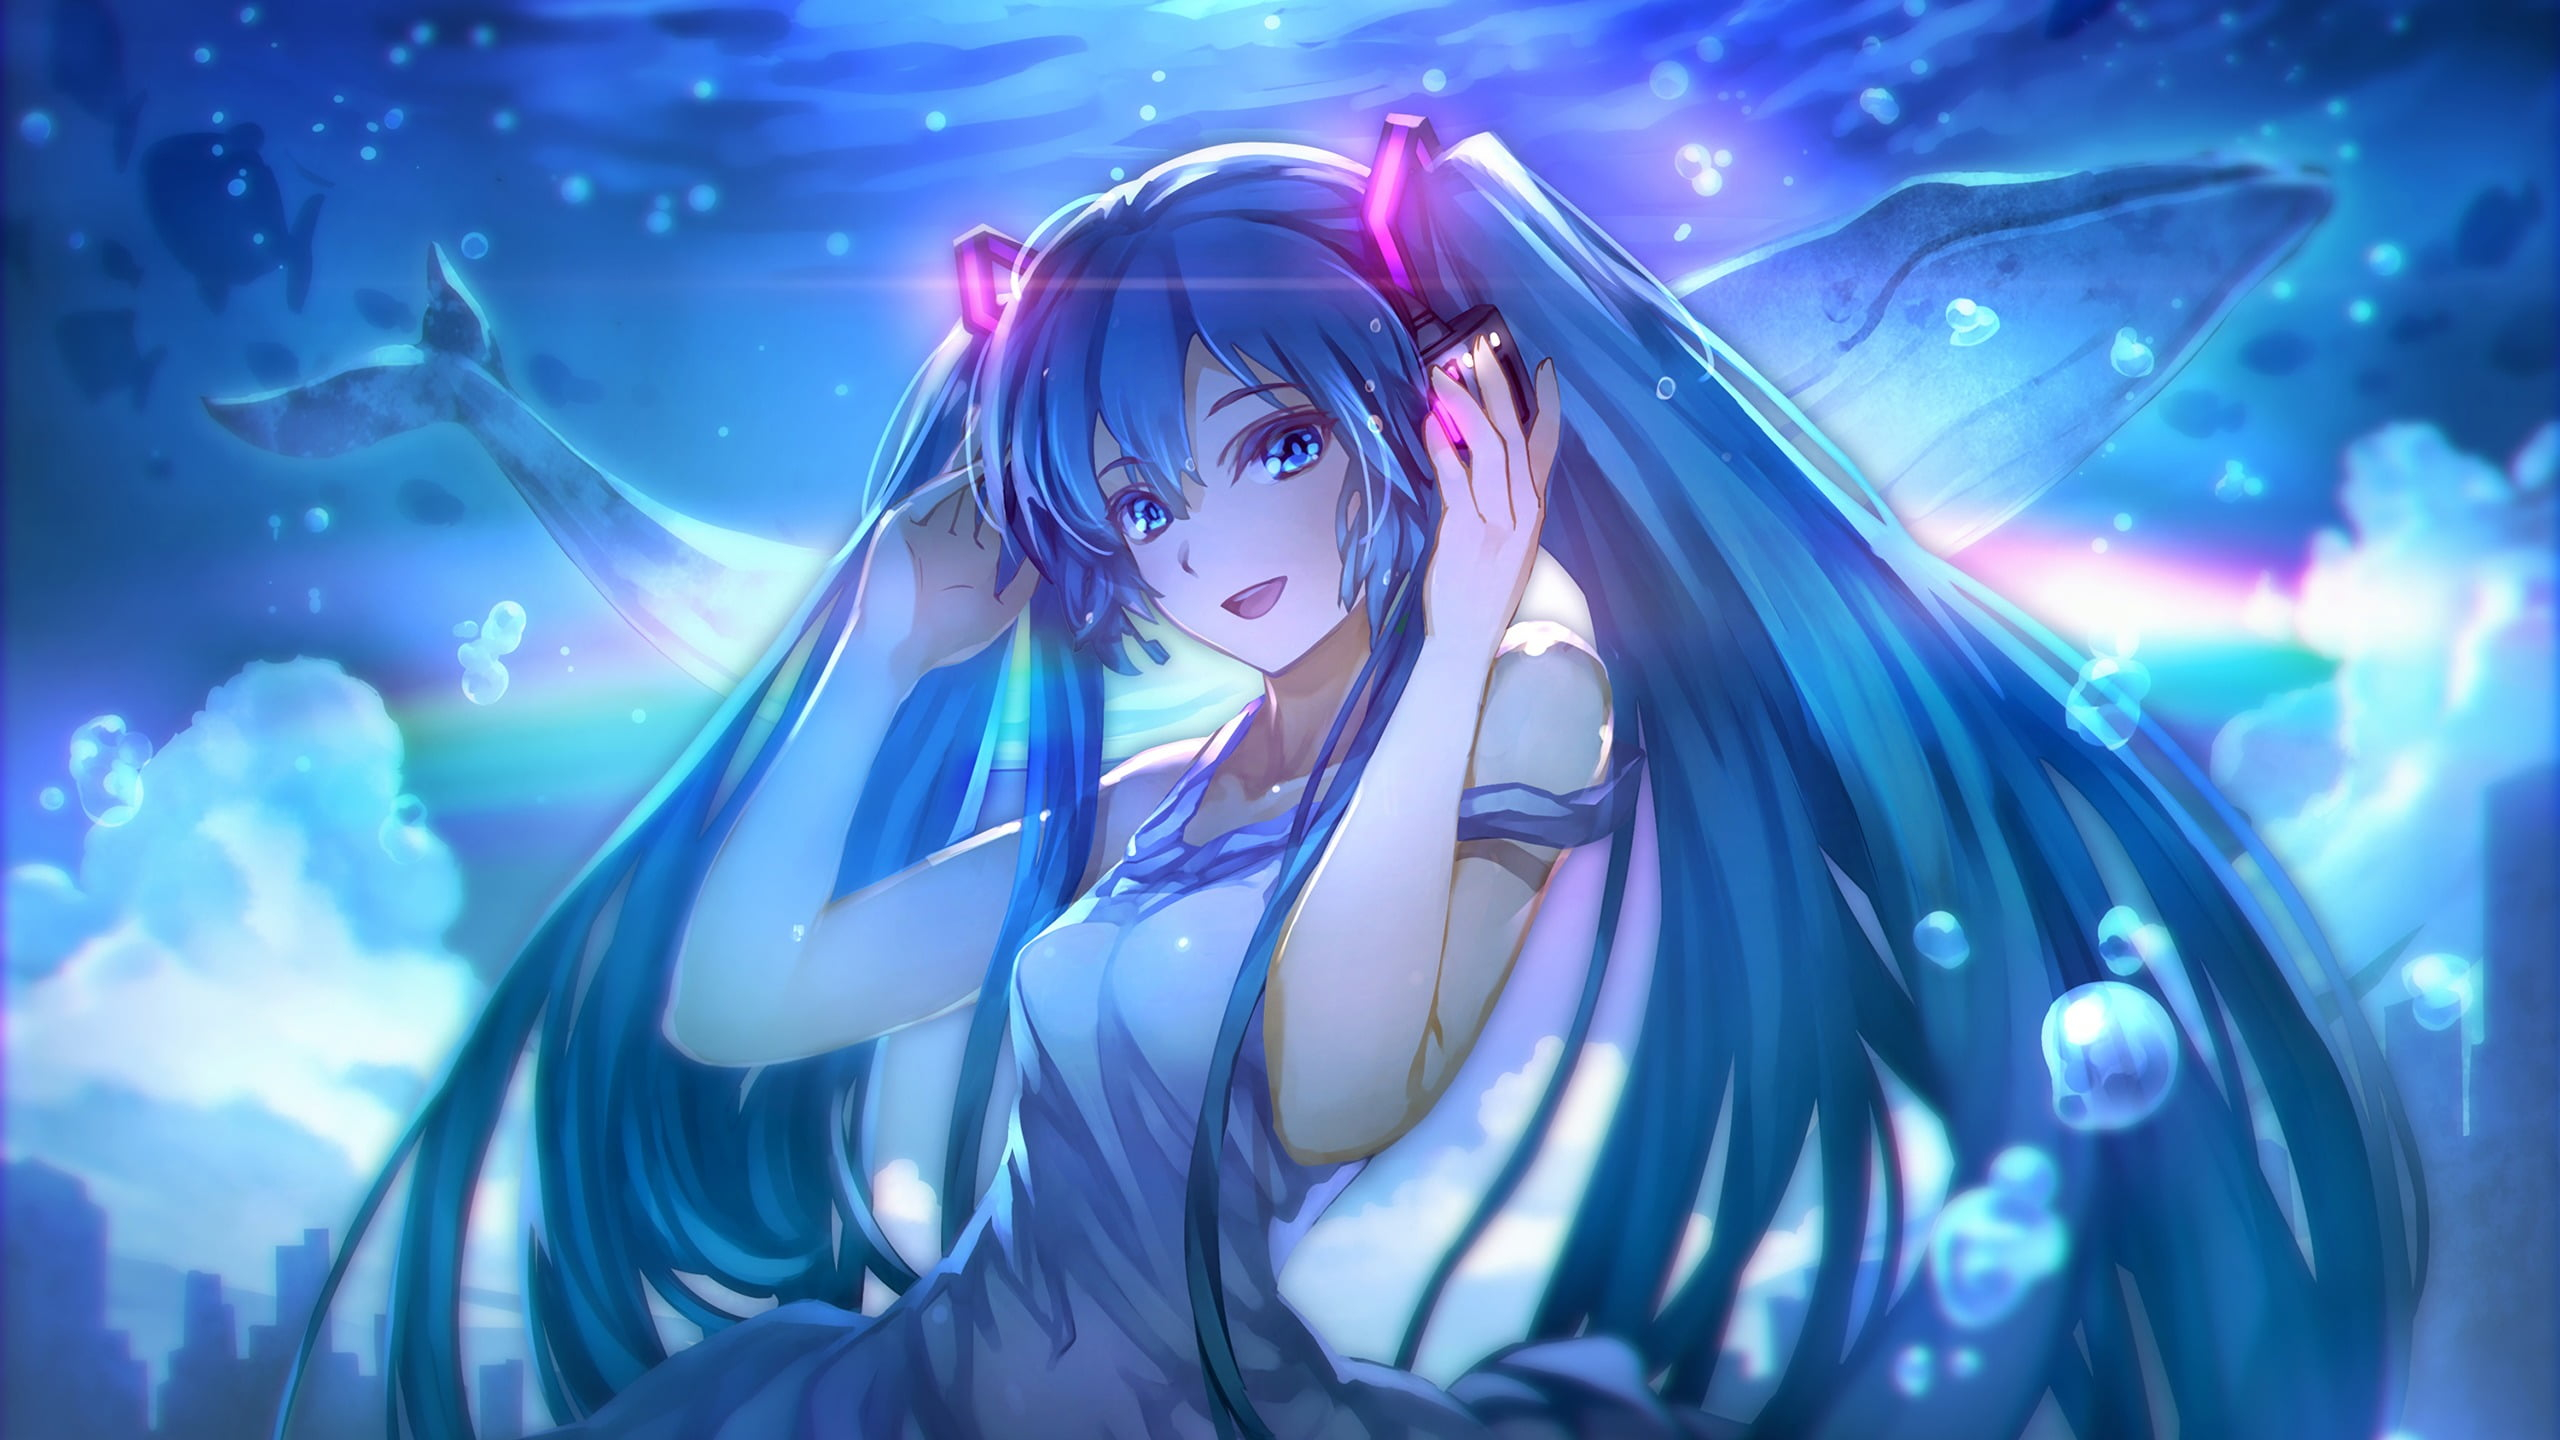 Blue-haired female anime character digital wallpaper, anime girls